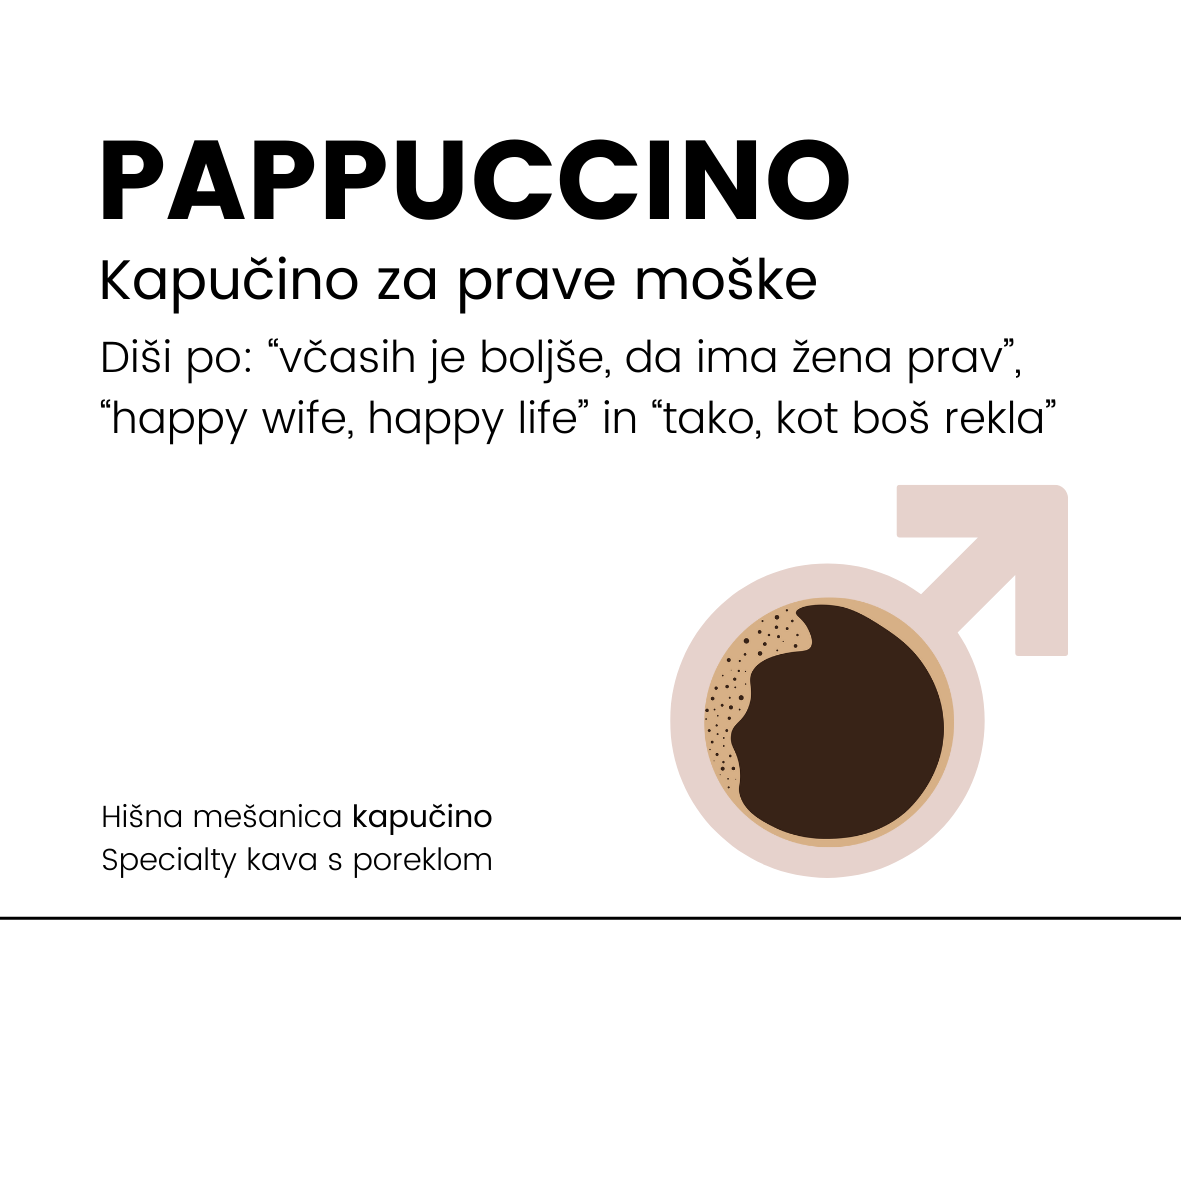 Pappuccino - Specialty kavna mešanica kapučino